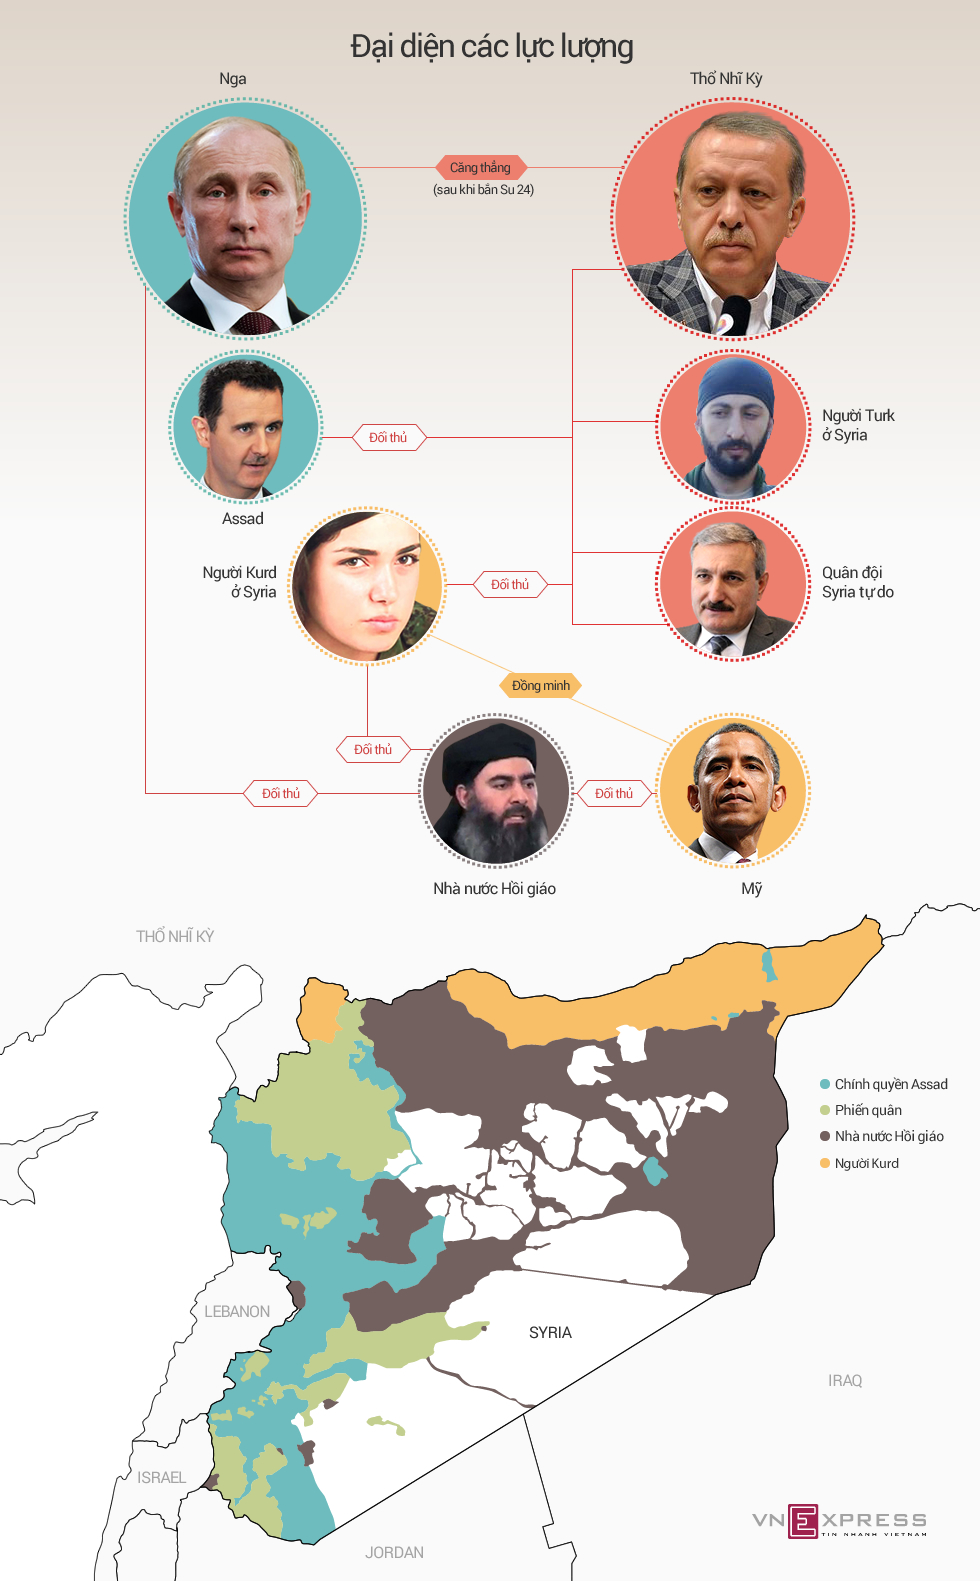 Quan hệ chồng chéo giữa Nga - Thổ Nhĩ Kỳ và các thế lực ở Syria